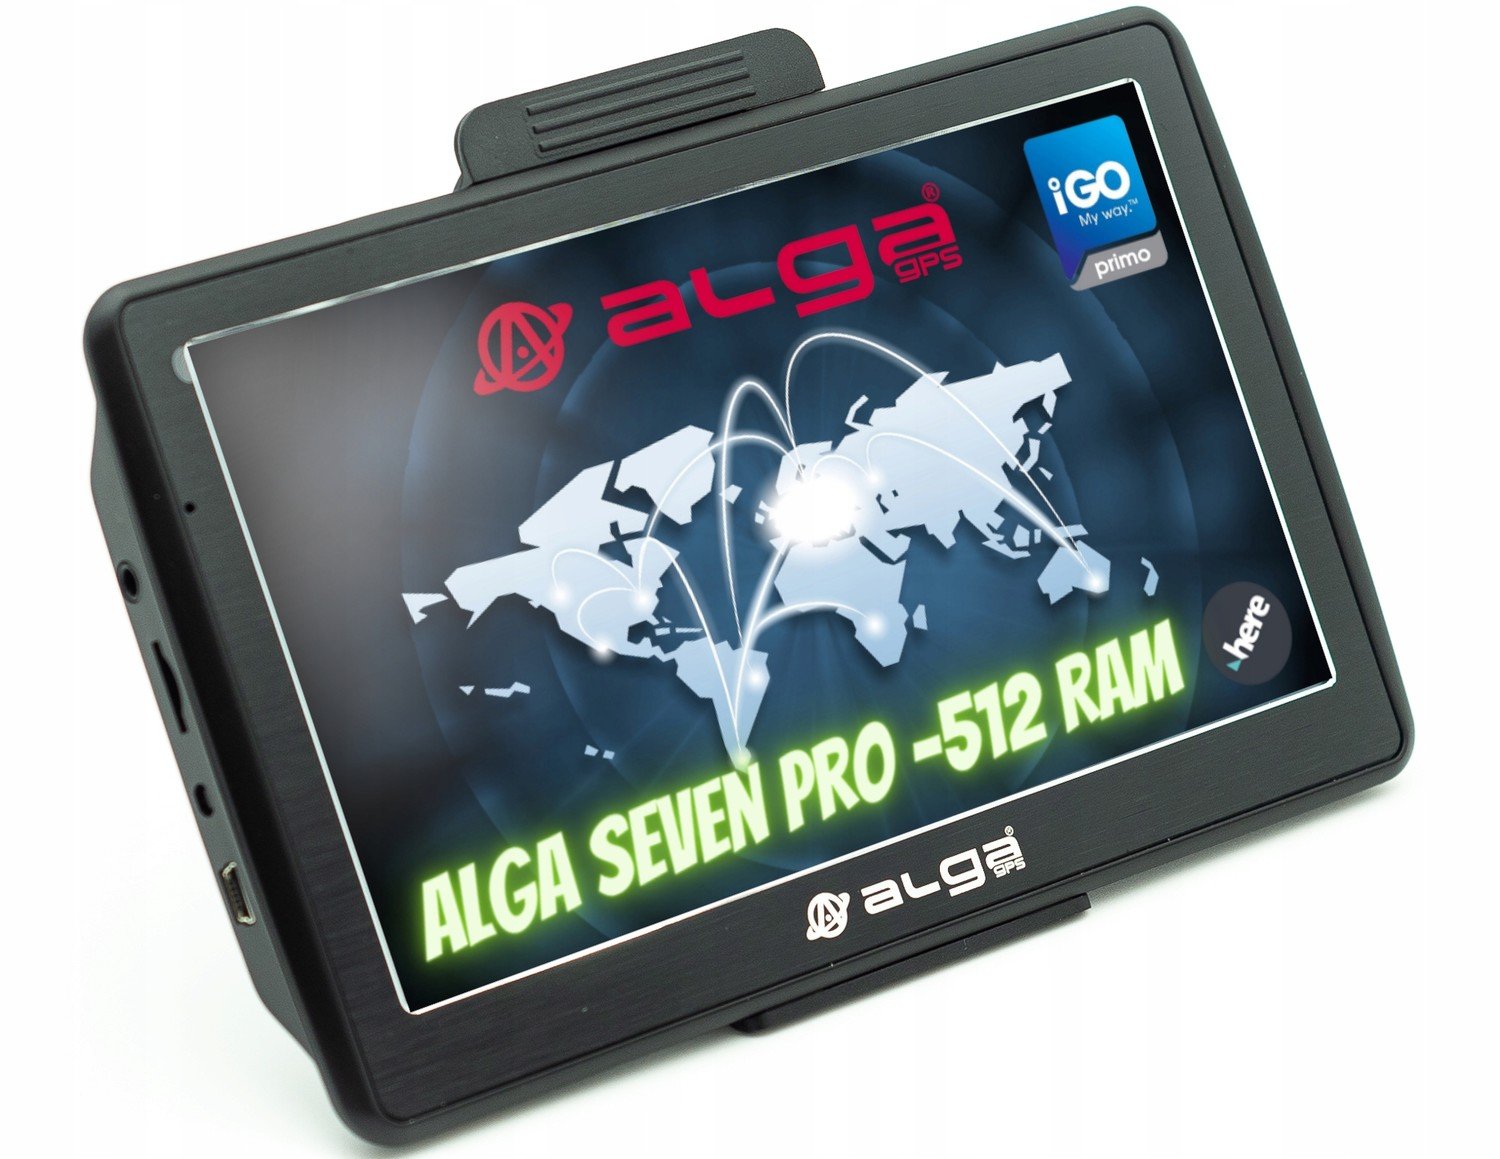 Alga Seven PRO-512 Ram, Gps navigace,TIR, iGO Adr